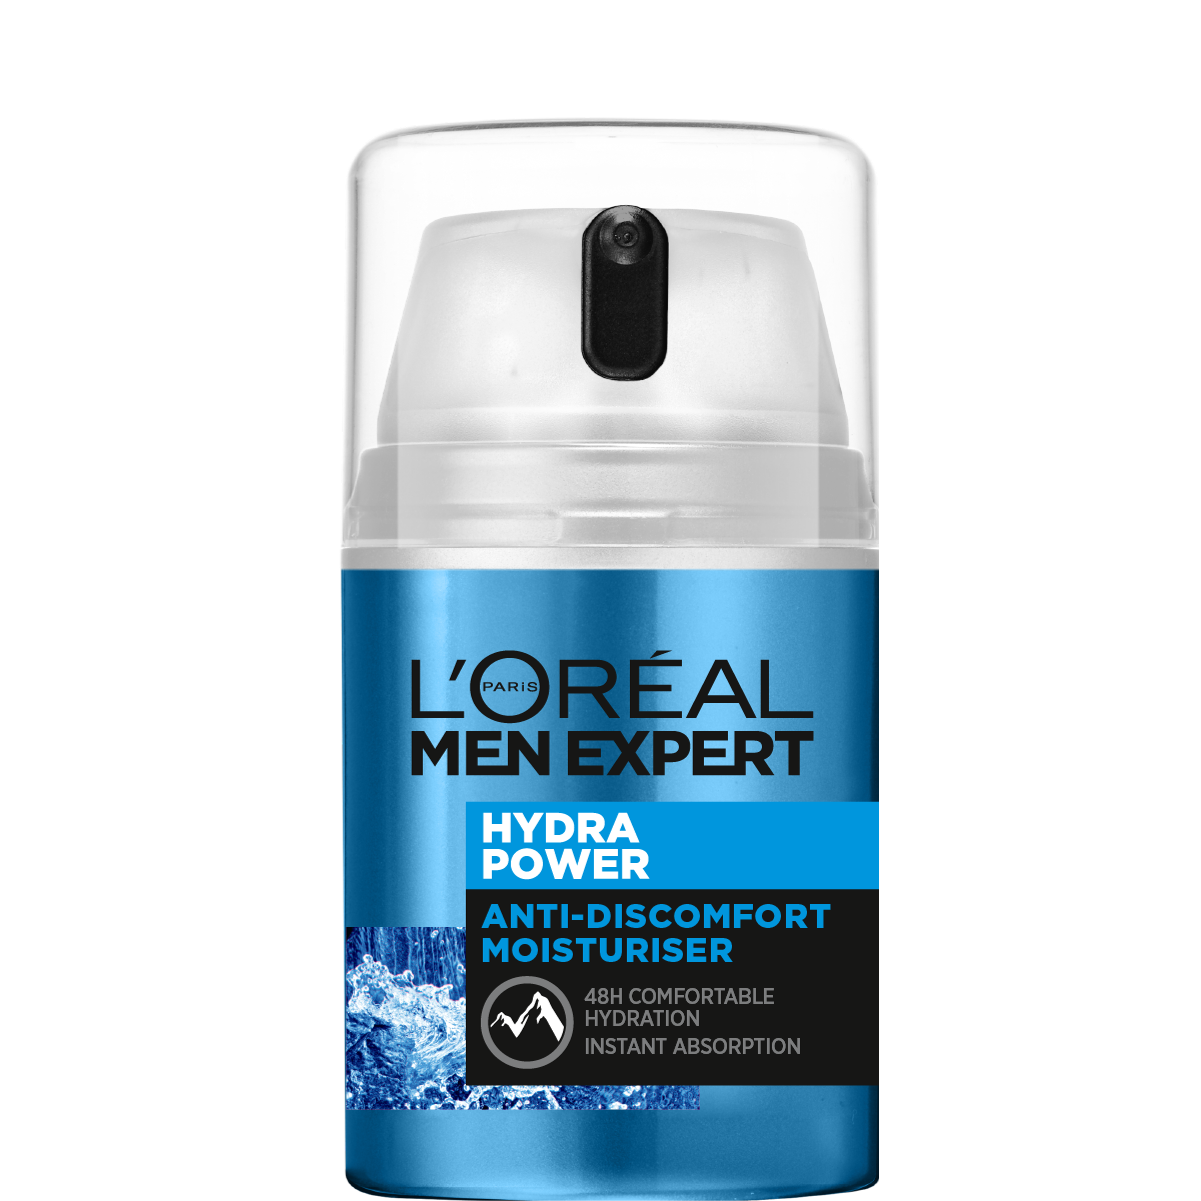 Зволожуючий засіб L'oreal Paris Men Expert Hydra Power з освіжаючим ефектом для обличчя, 50 мл - фото 1